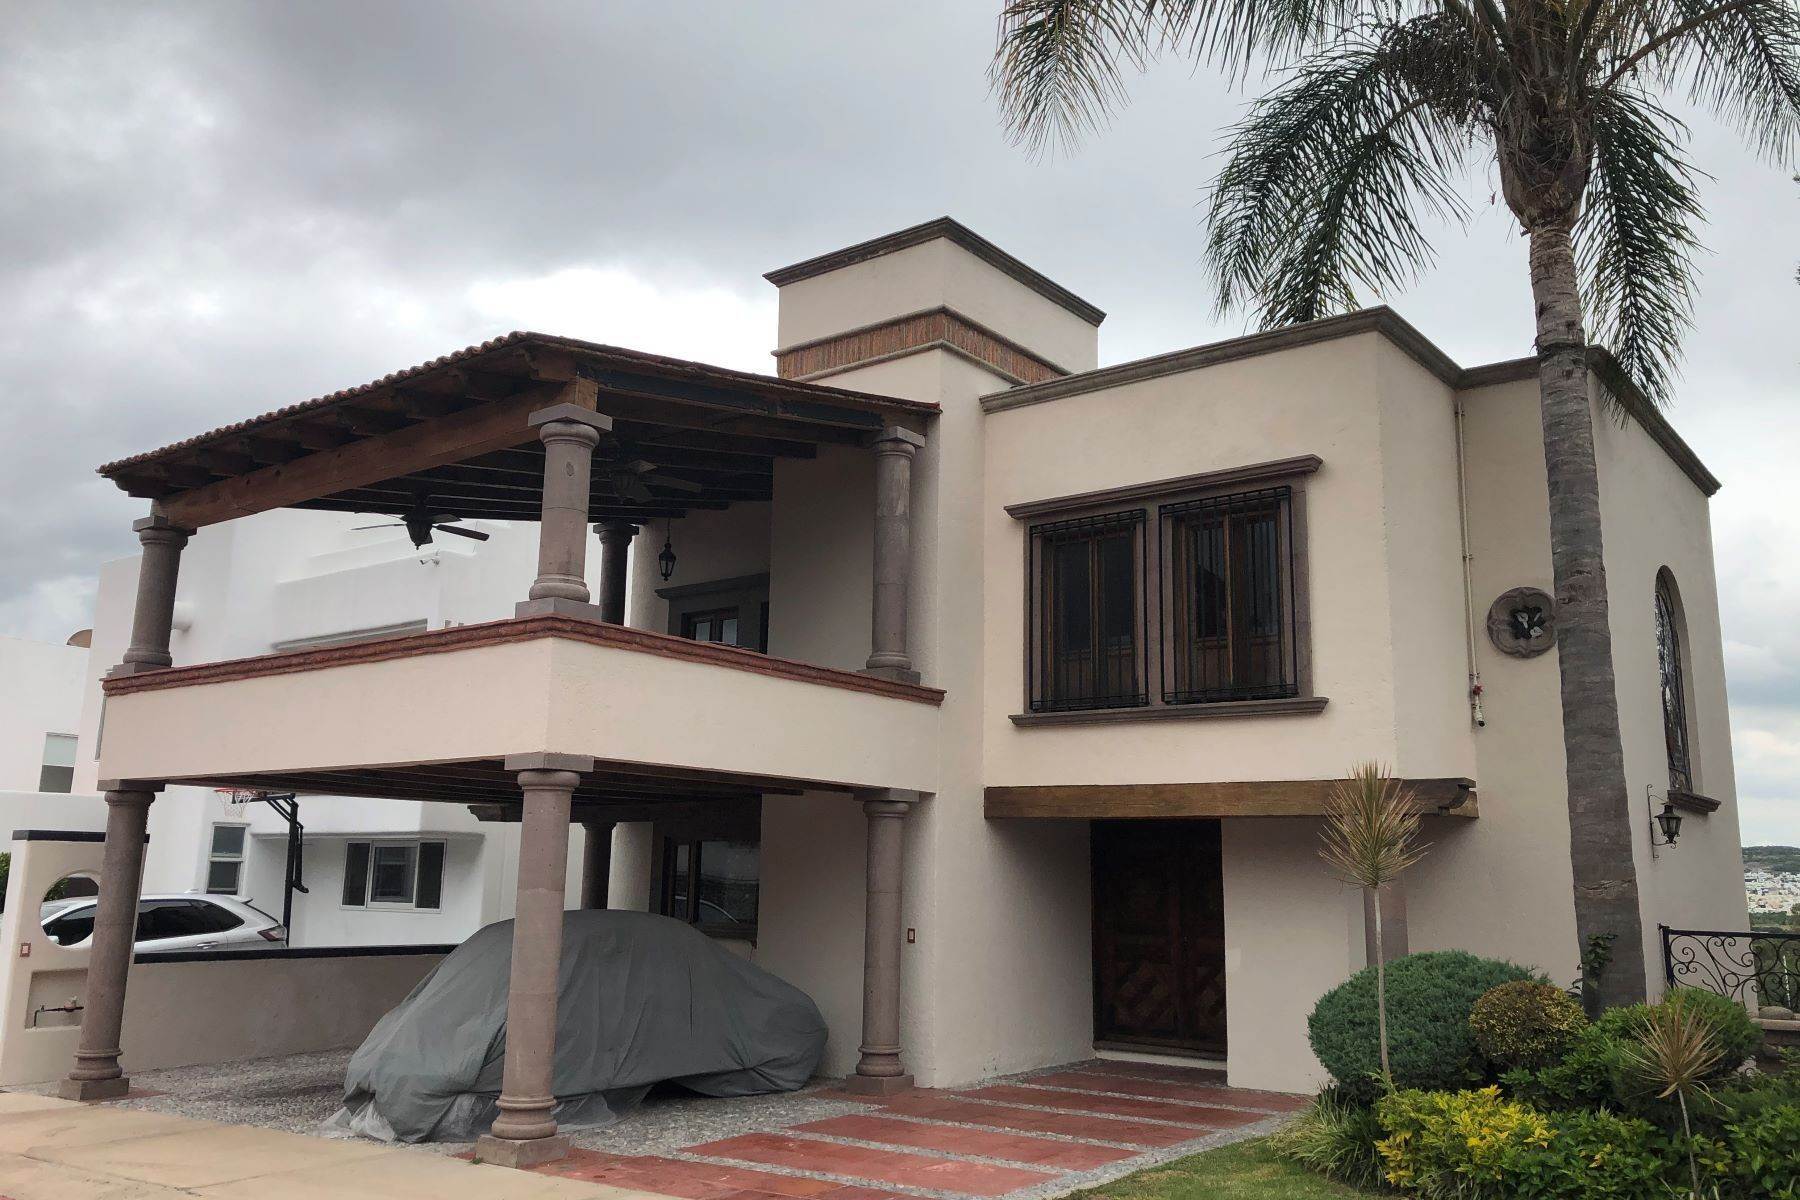 23. Single Family Homes for Sale at Casa del León - SOLD Queretaro, Queretaro 76226 Mexico